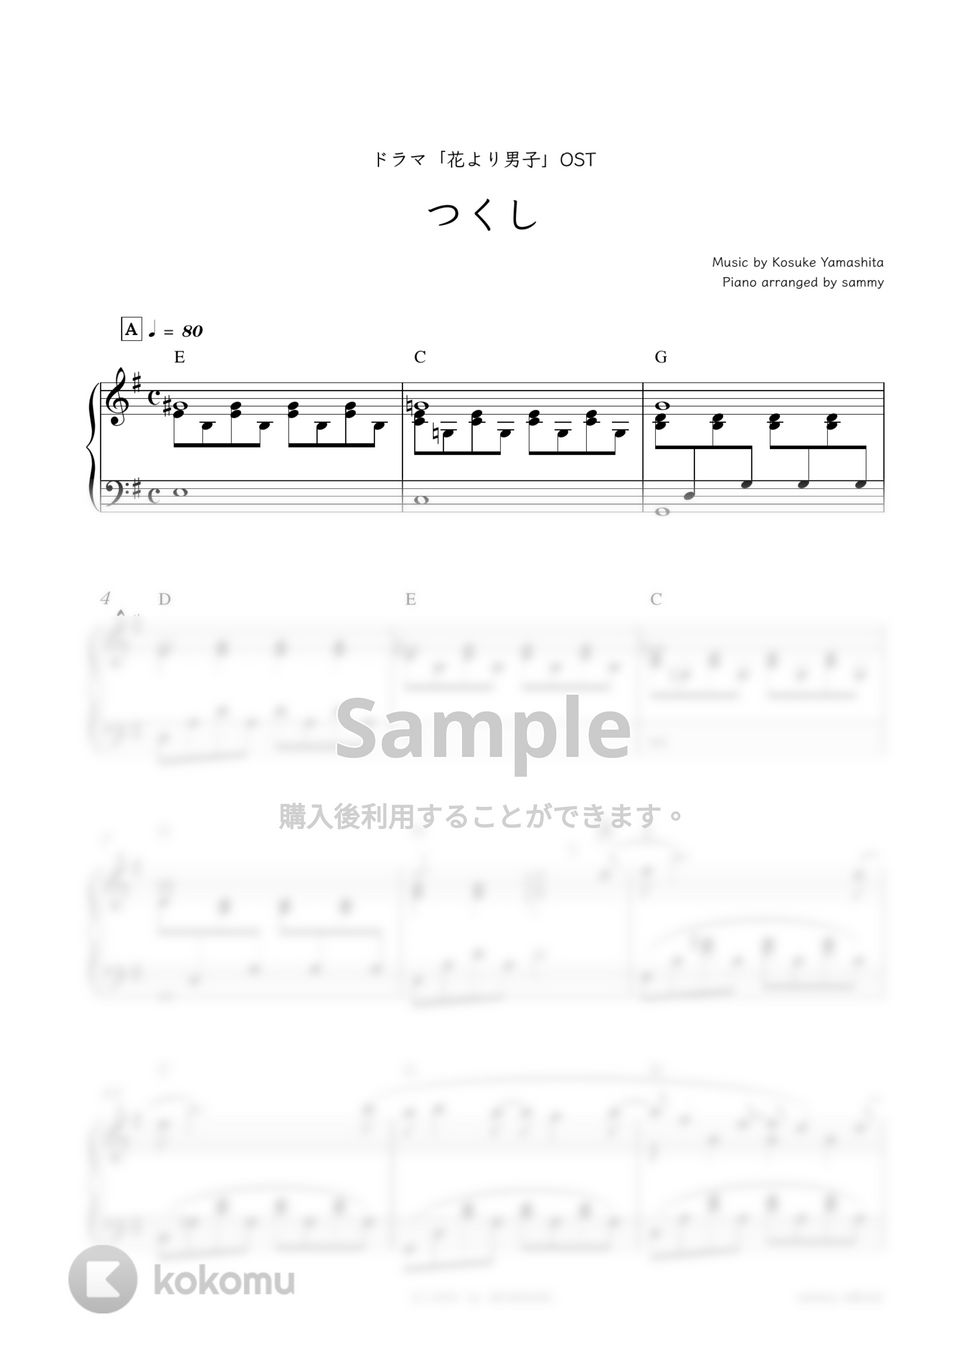 ドラマ『花より男子』OST - つくし by sammy